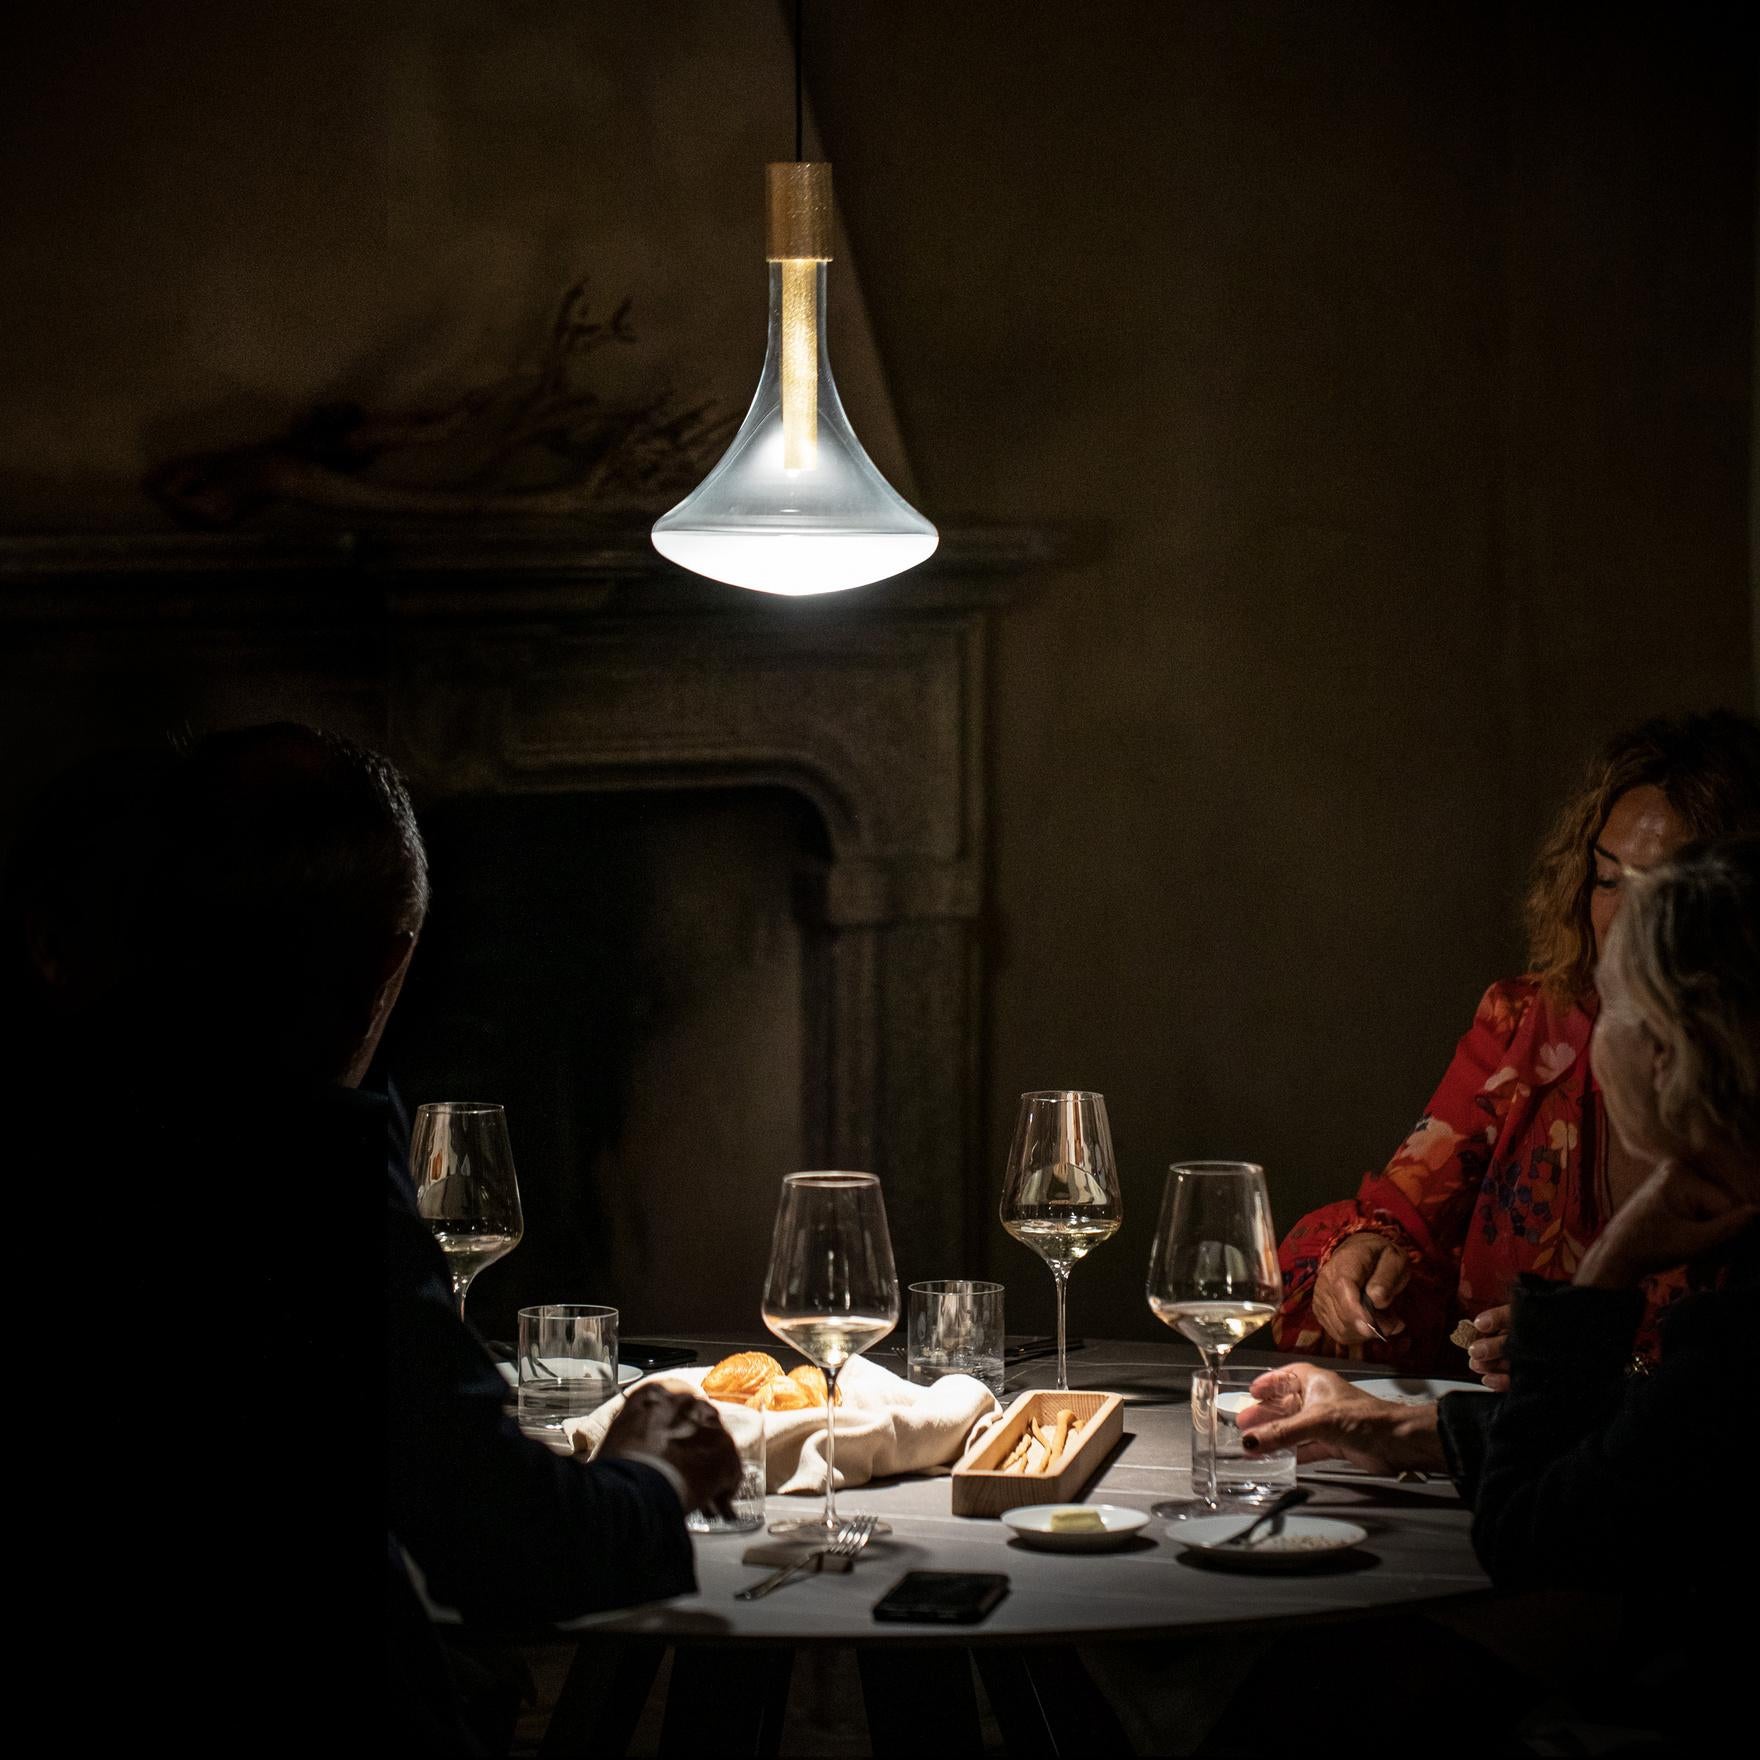 Davide Groppi CATHODE pendant lamp in Matt White by Omar Carraglia  For Sale 6